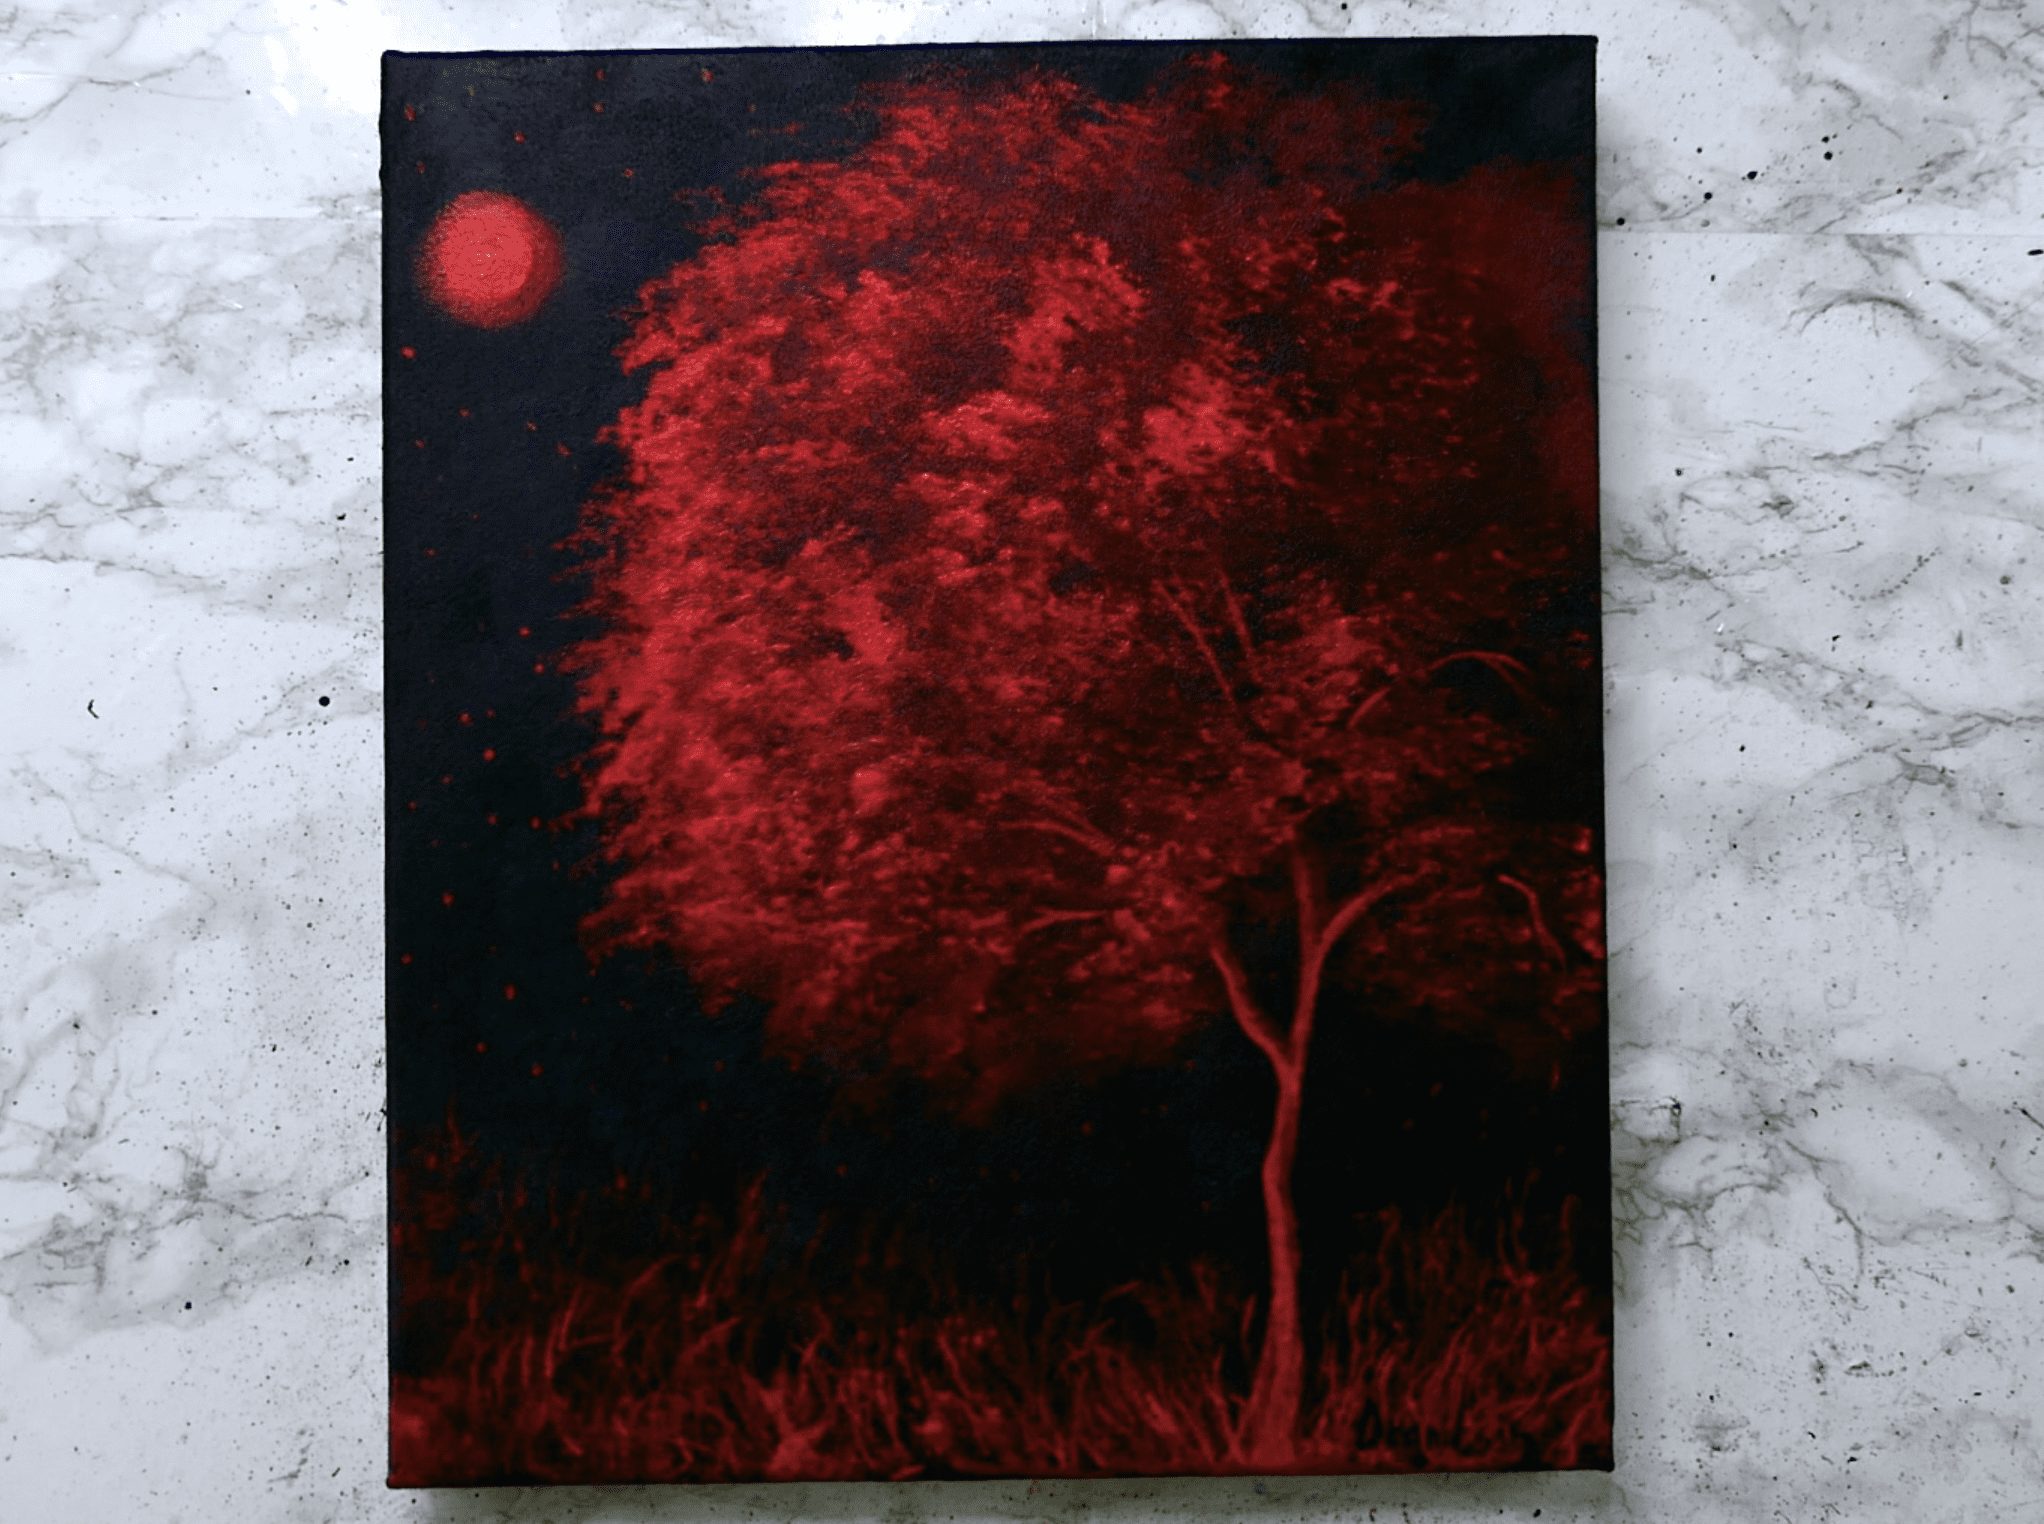 Cây đỏ mang trong mình sức sống và năng lượng! Hãy cùng thông qua hình ảnh liên quan đến từ khóa này để khám phá những loại cây đỏ đầy màu sắc, đẹp mắt và rất rực rỡ. Hãy để những thước phim về cây đỏ đưa bạn vào thế giới của sự hài hòa, tình yêu và sức mạnh.